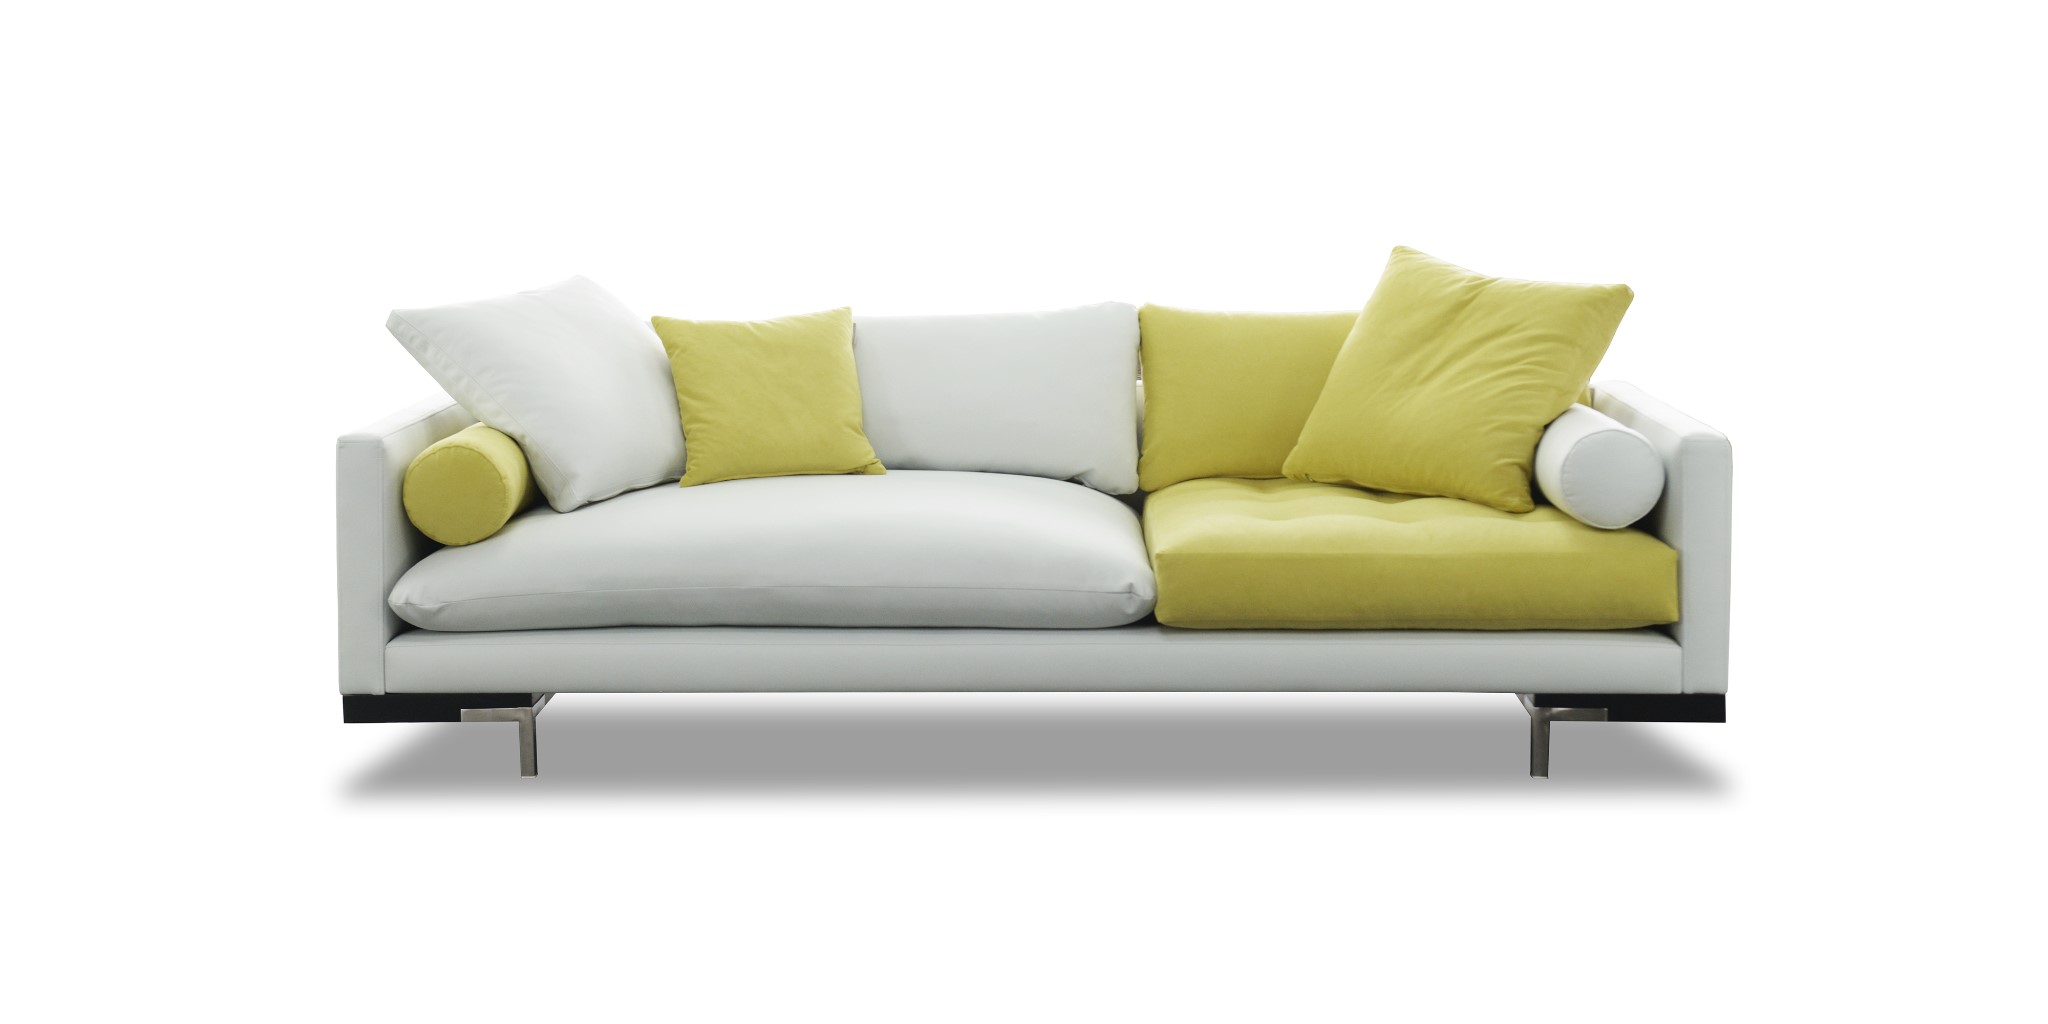 Ghế sofa đôi giúp tiết kiệm diện tích không gian hiệu quả